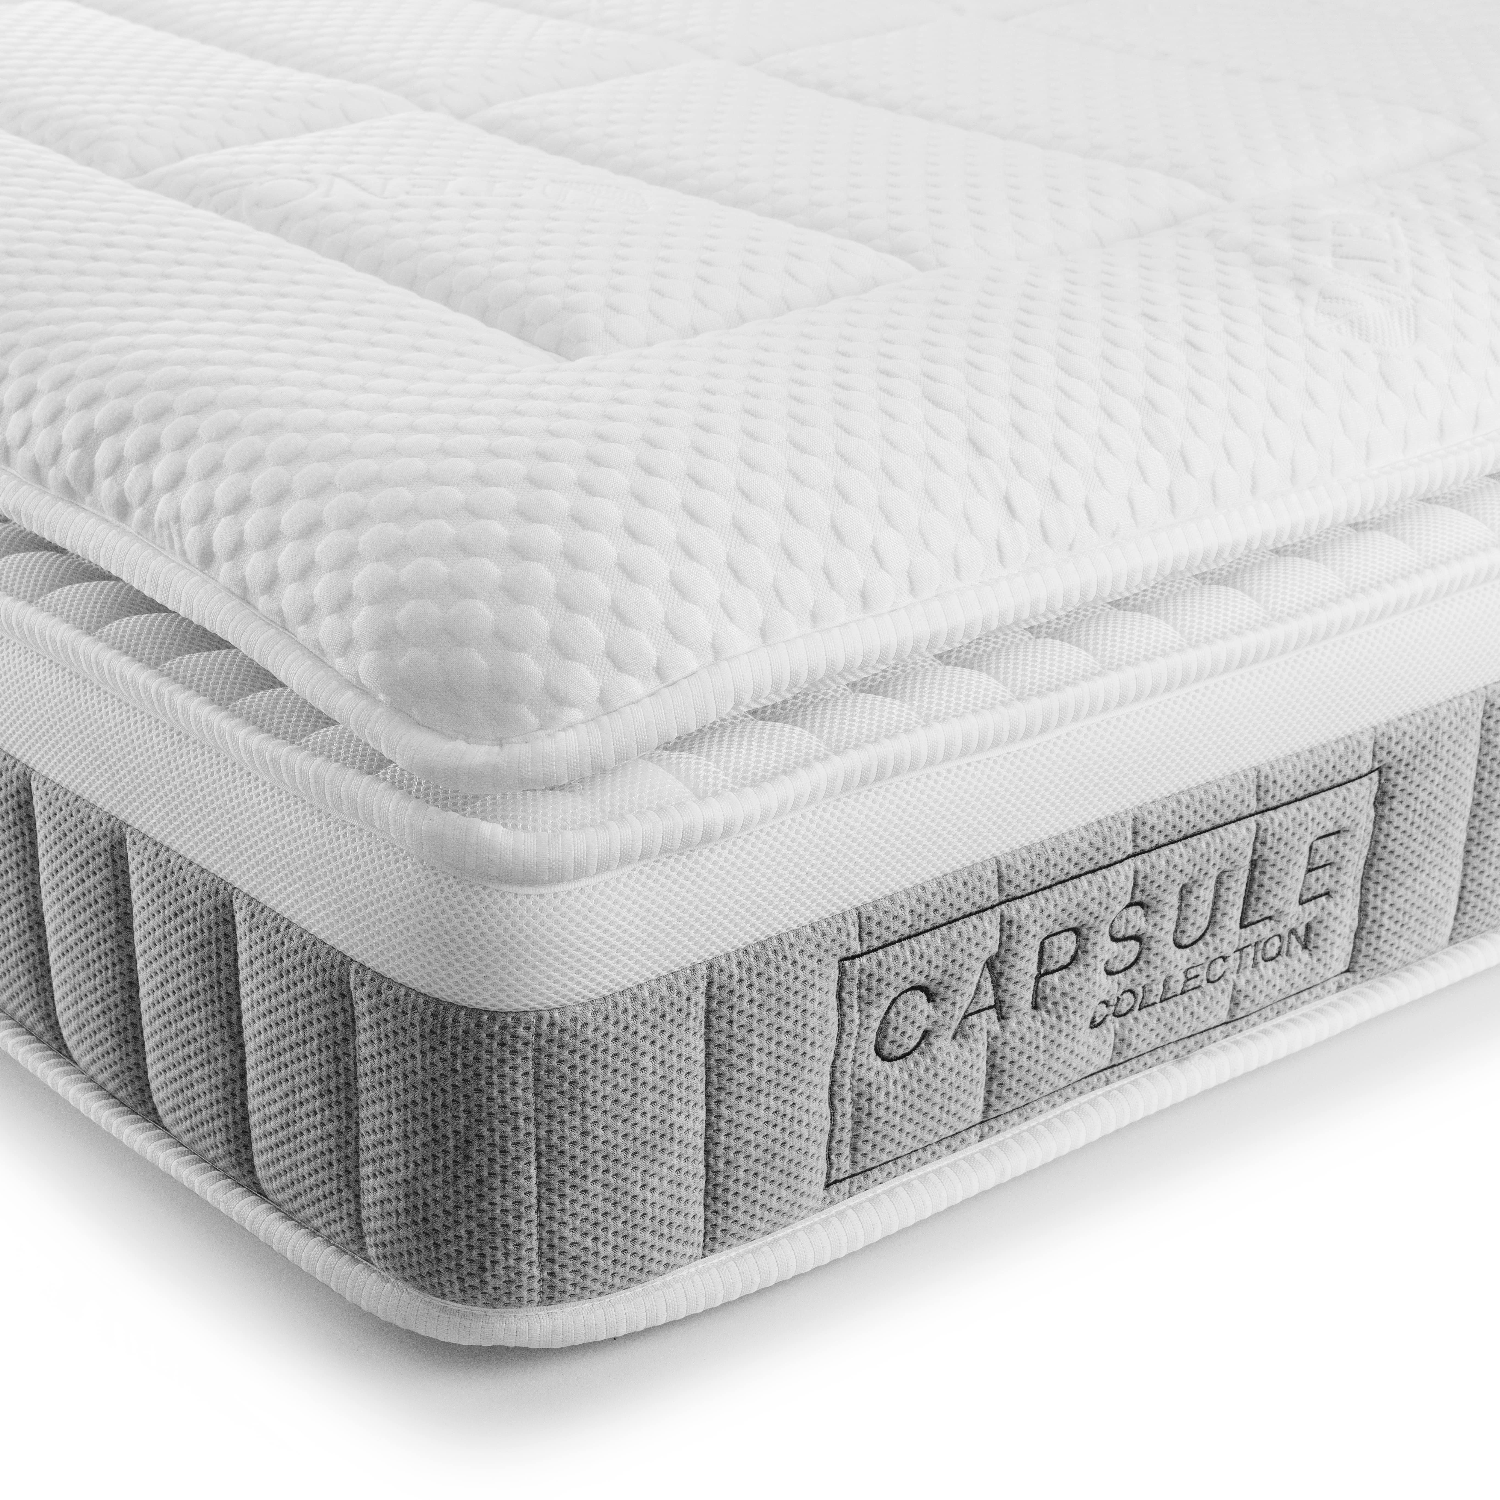 Julian bowen capsule 3000 pocket sprung pillow-top mattress - double